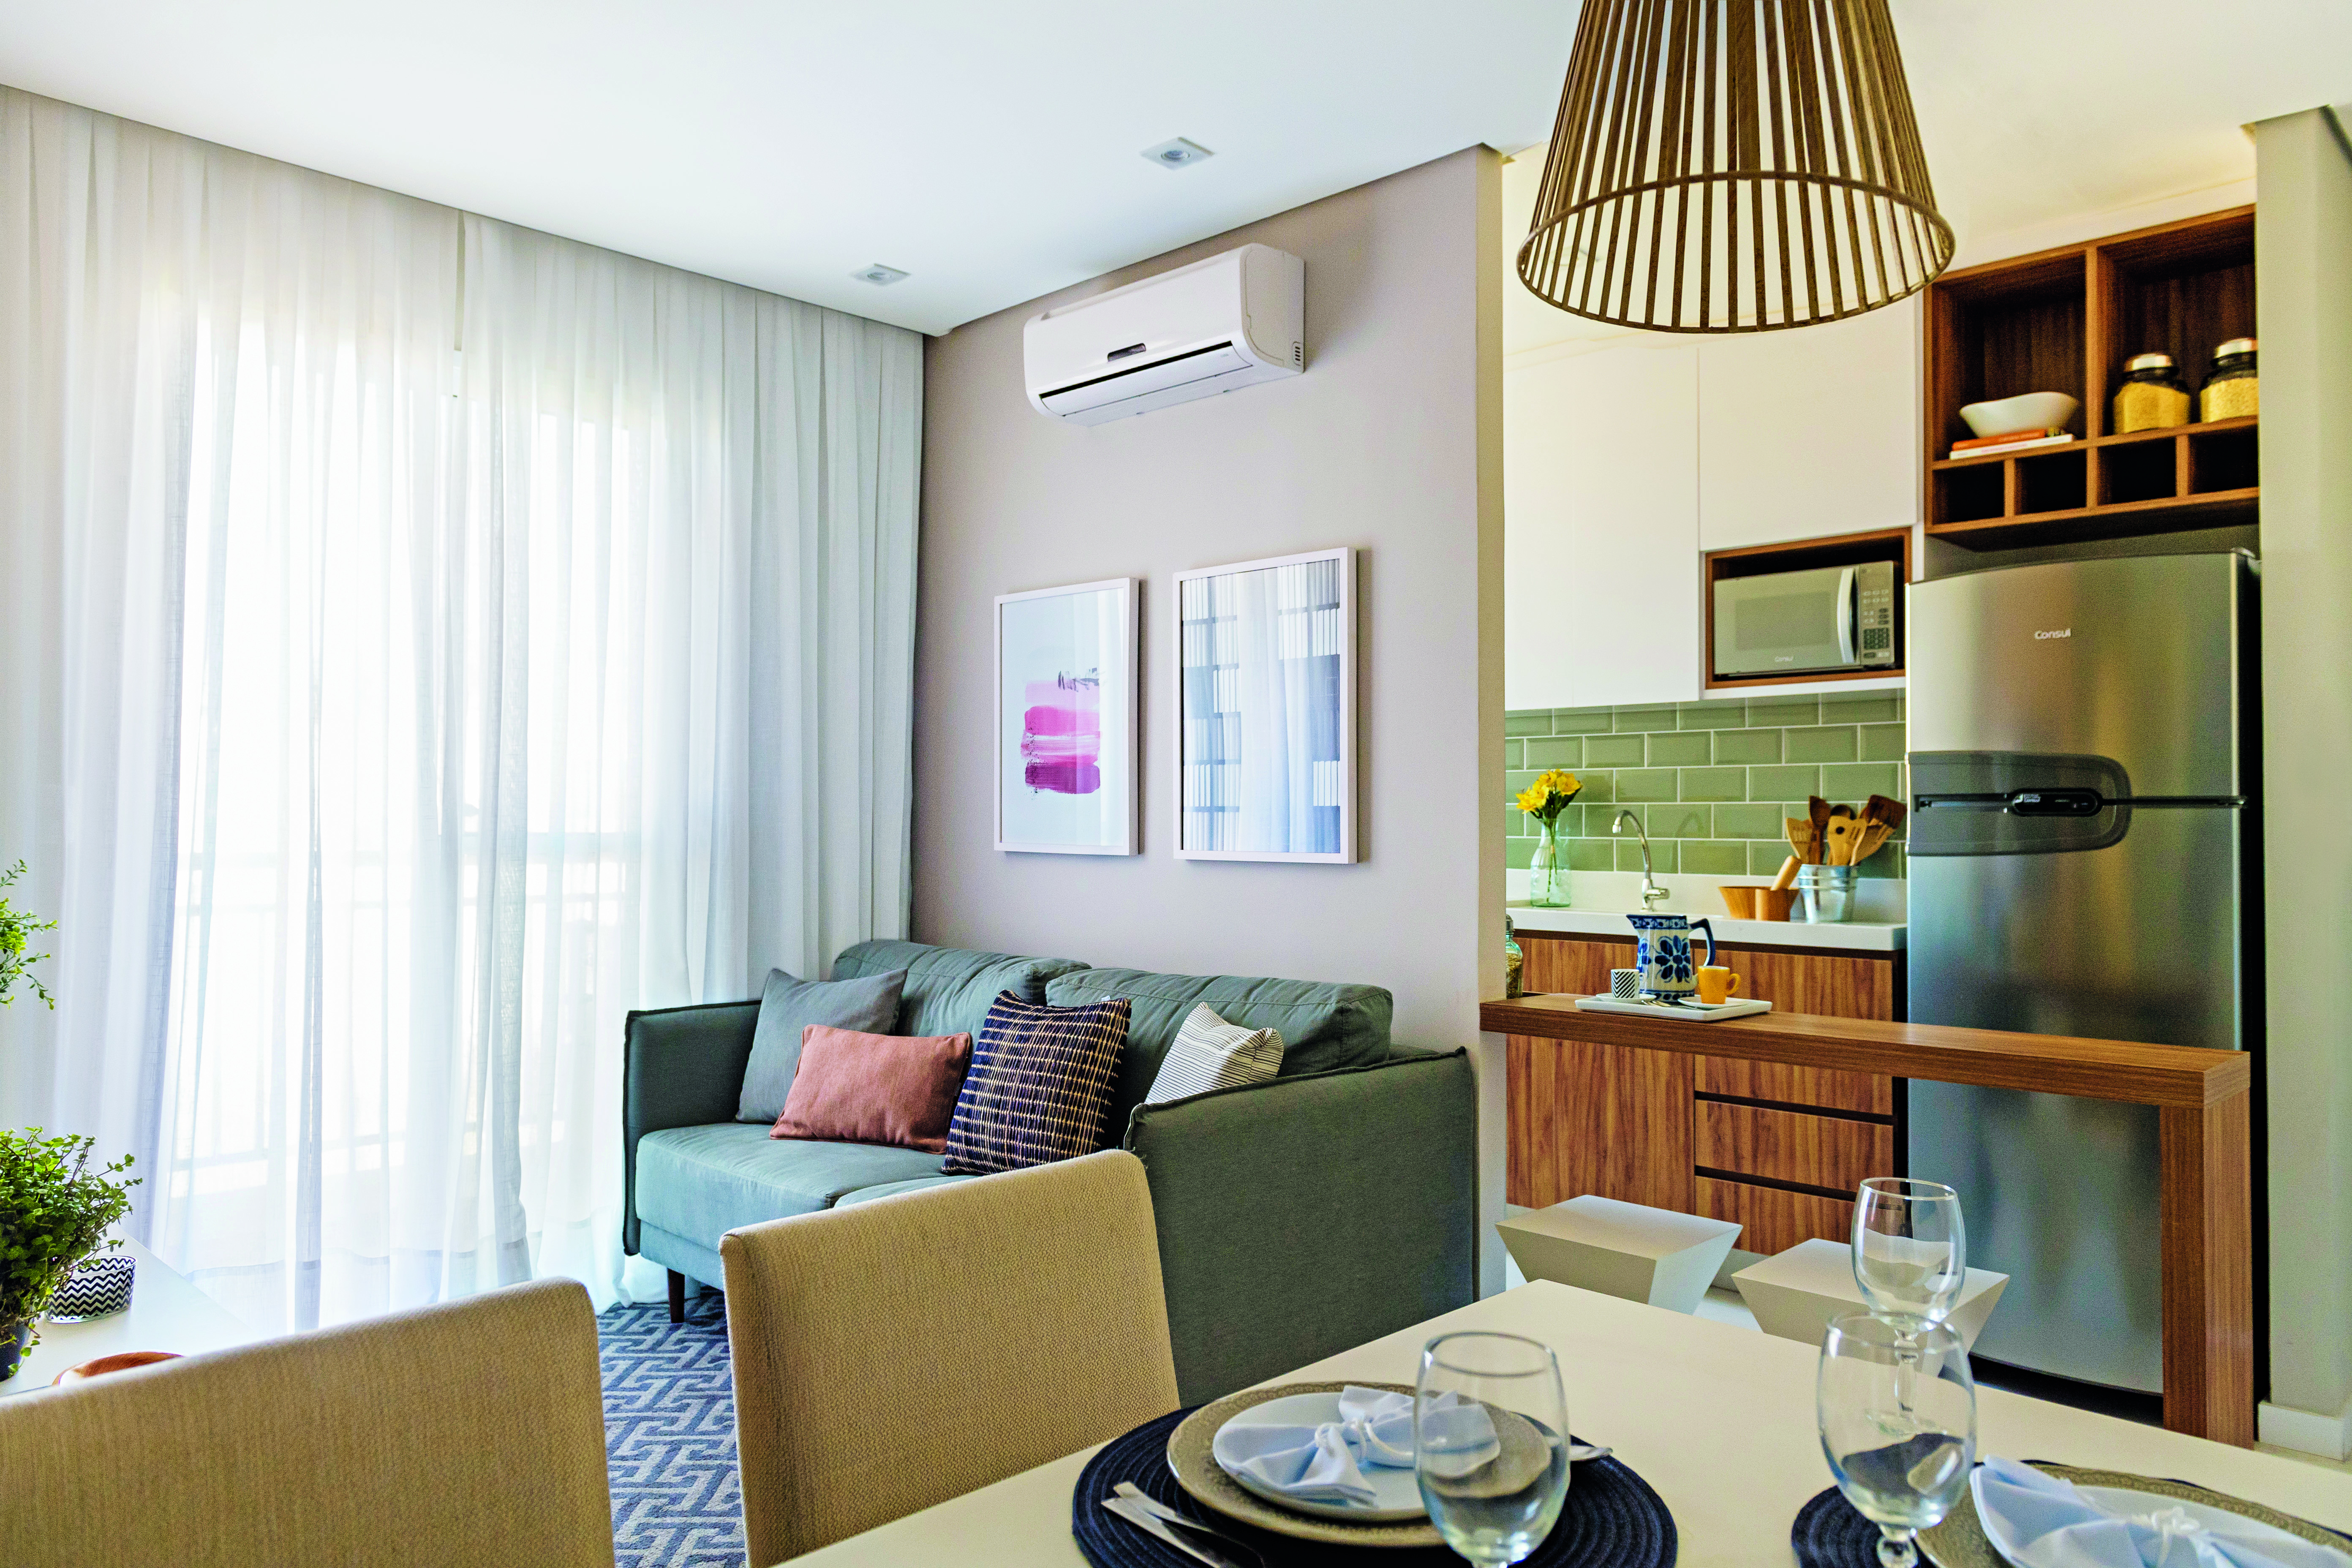  Petit appartement : 45 m² décoré avec charme et style